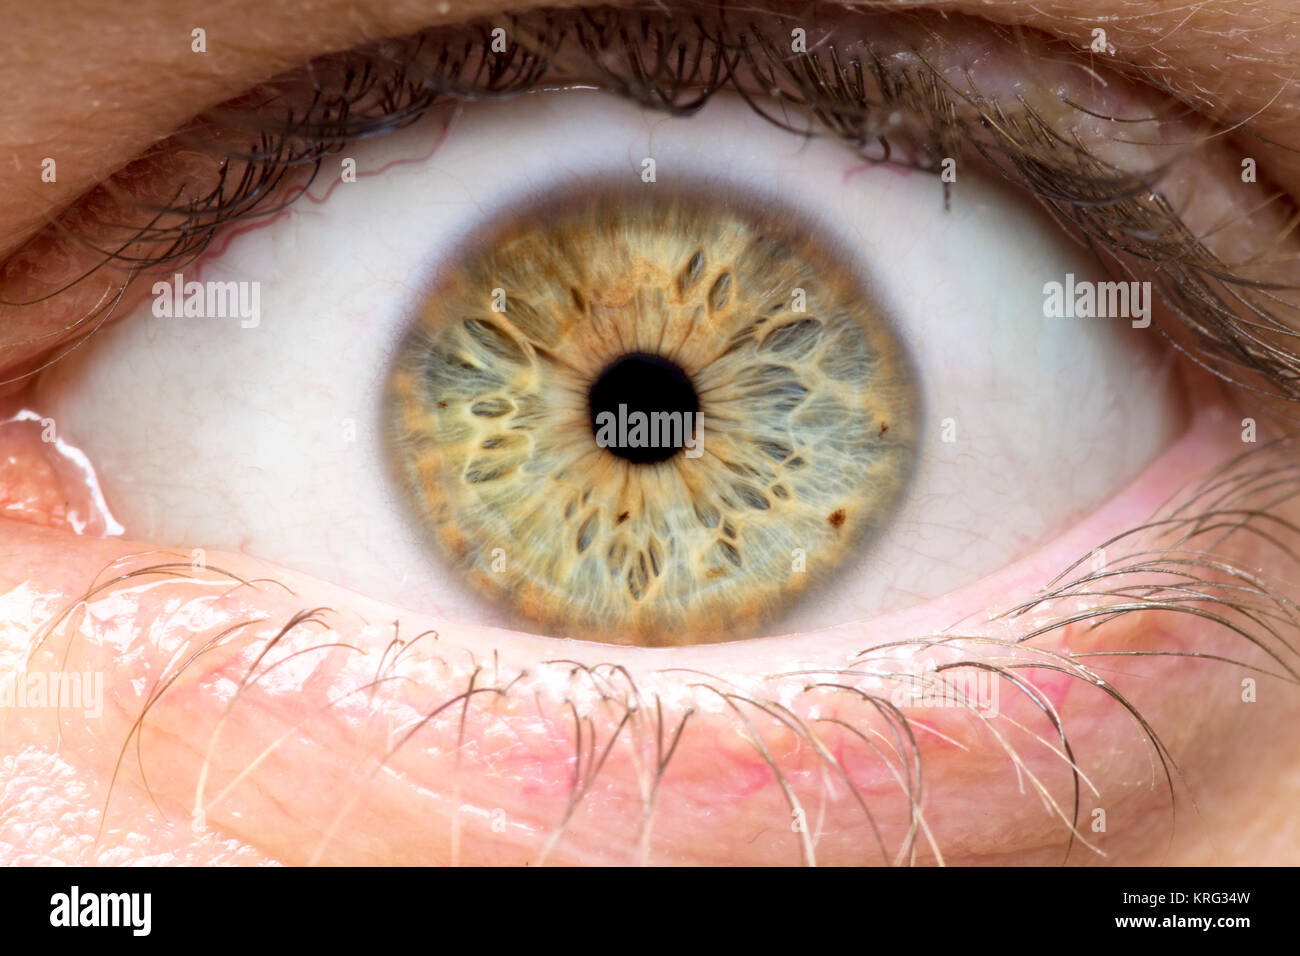 Foto macro di occhio umano, iris, alunno, ciglia, palpebre. Foto Stock